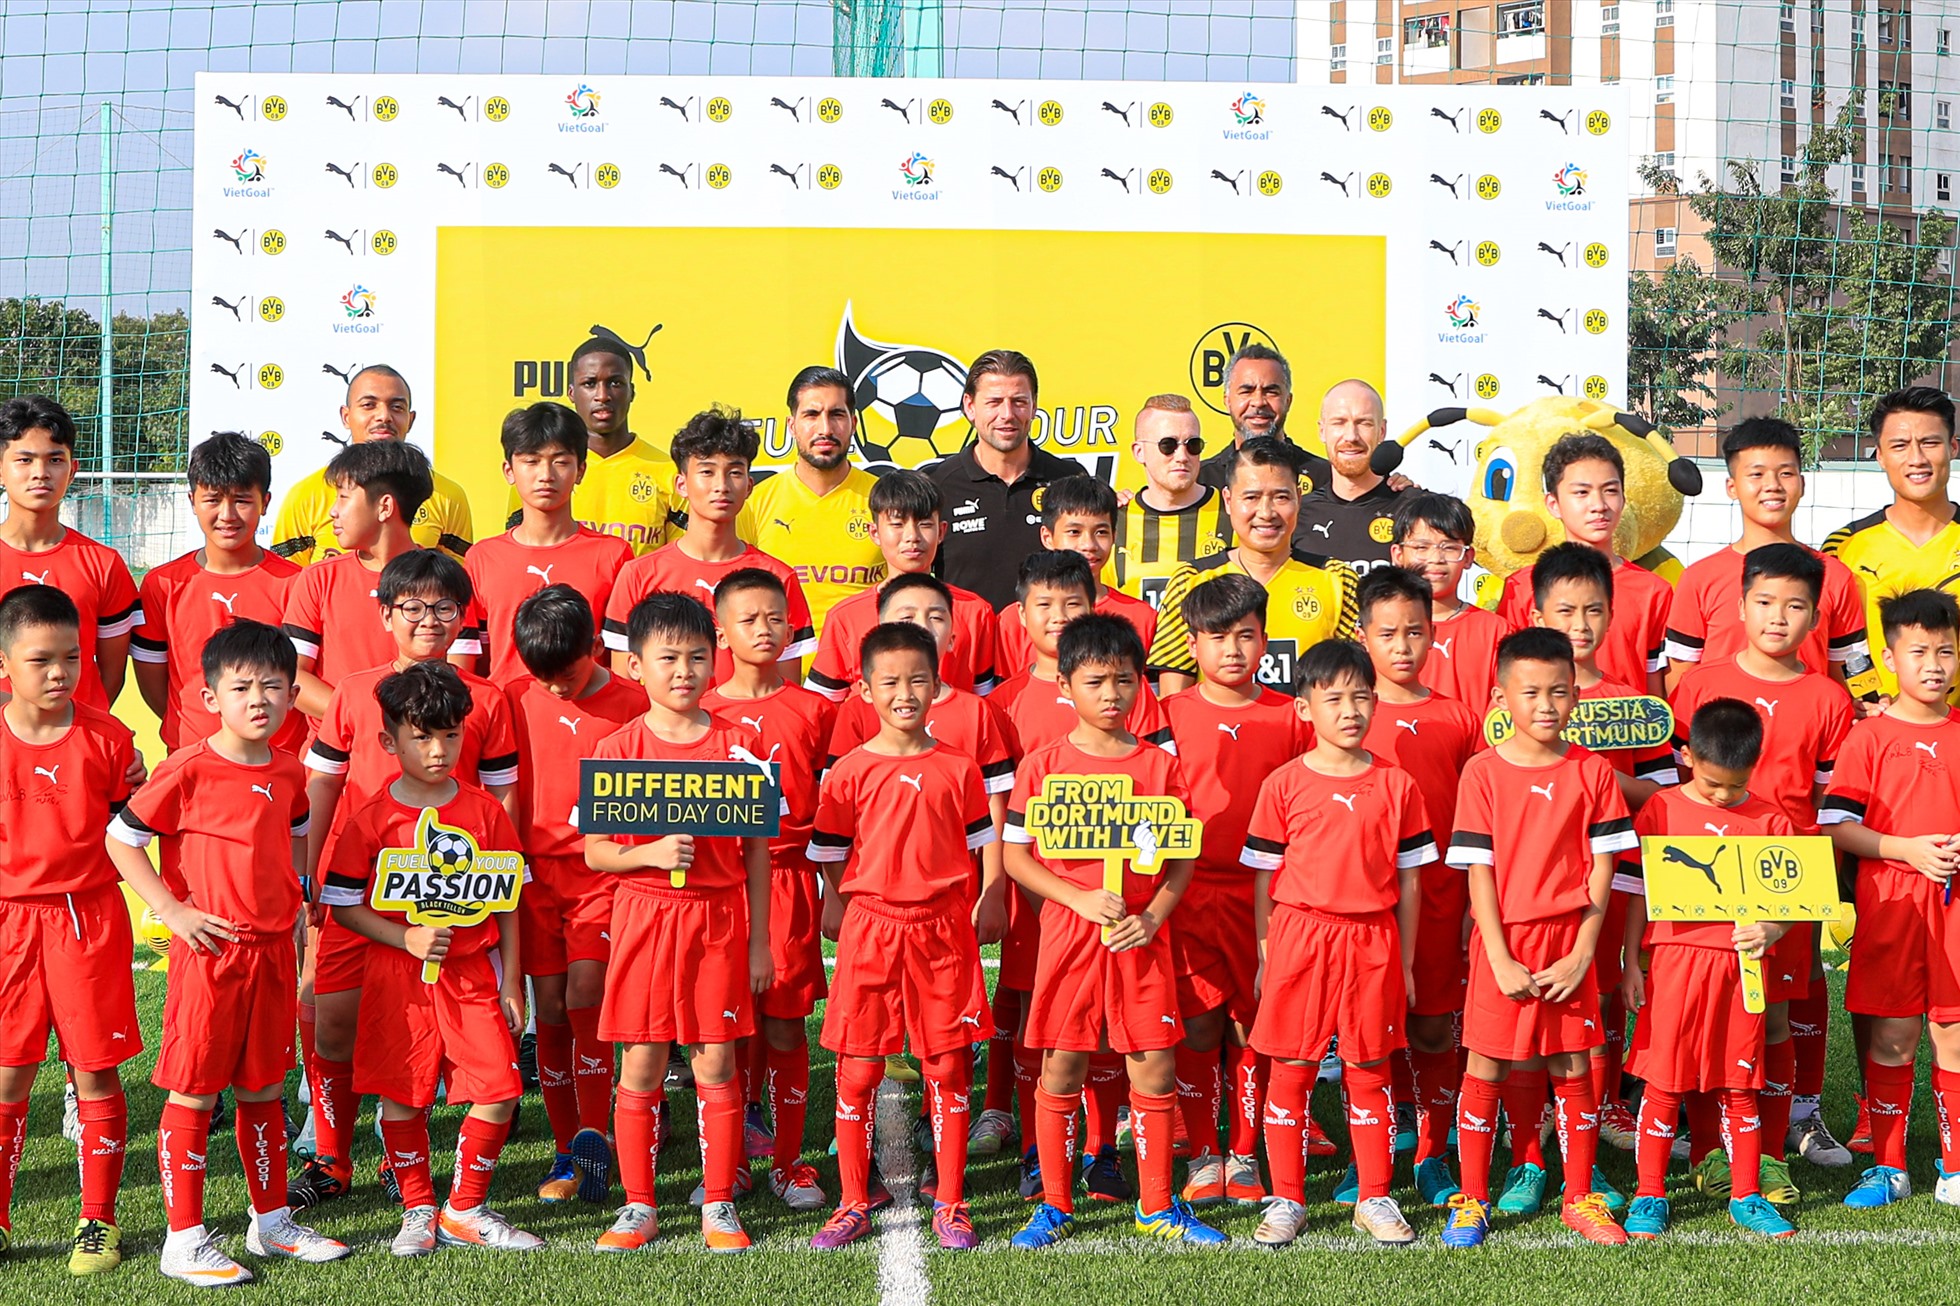 Chiều nay (29.11), các cầu thủ câu lạc bộ Borussia Dortmund là Emre Can, Coulibaly, Malen và huyền thoại Nguyễn Hồng Sơn, cầu thủ Mạc Hồng Quân đã có buổi giao lưu cùng các cầu thủ nhí Việt Nam tại sân Liên đoàn bóng đá Việt Nam.